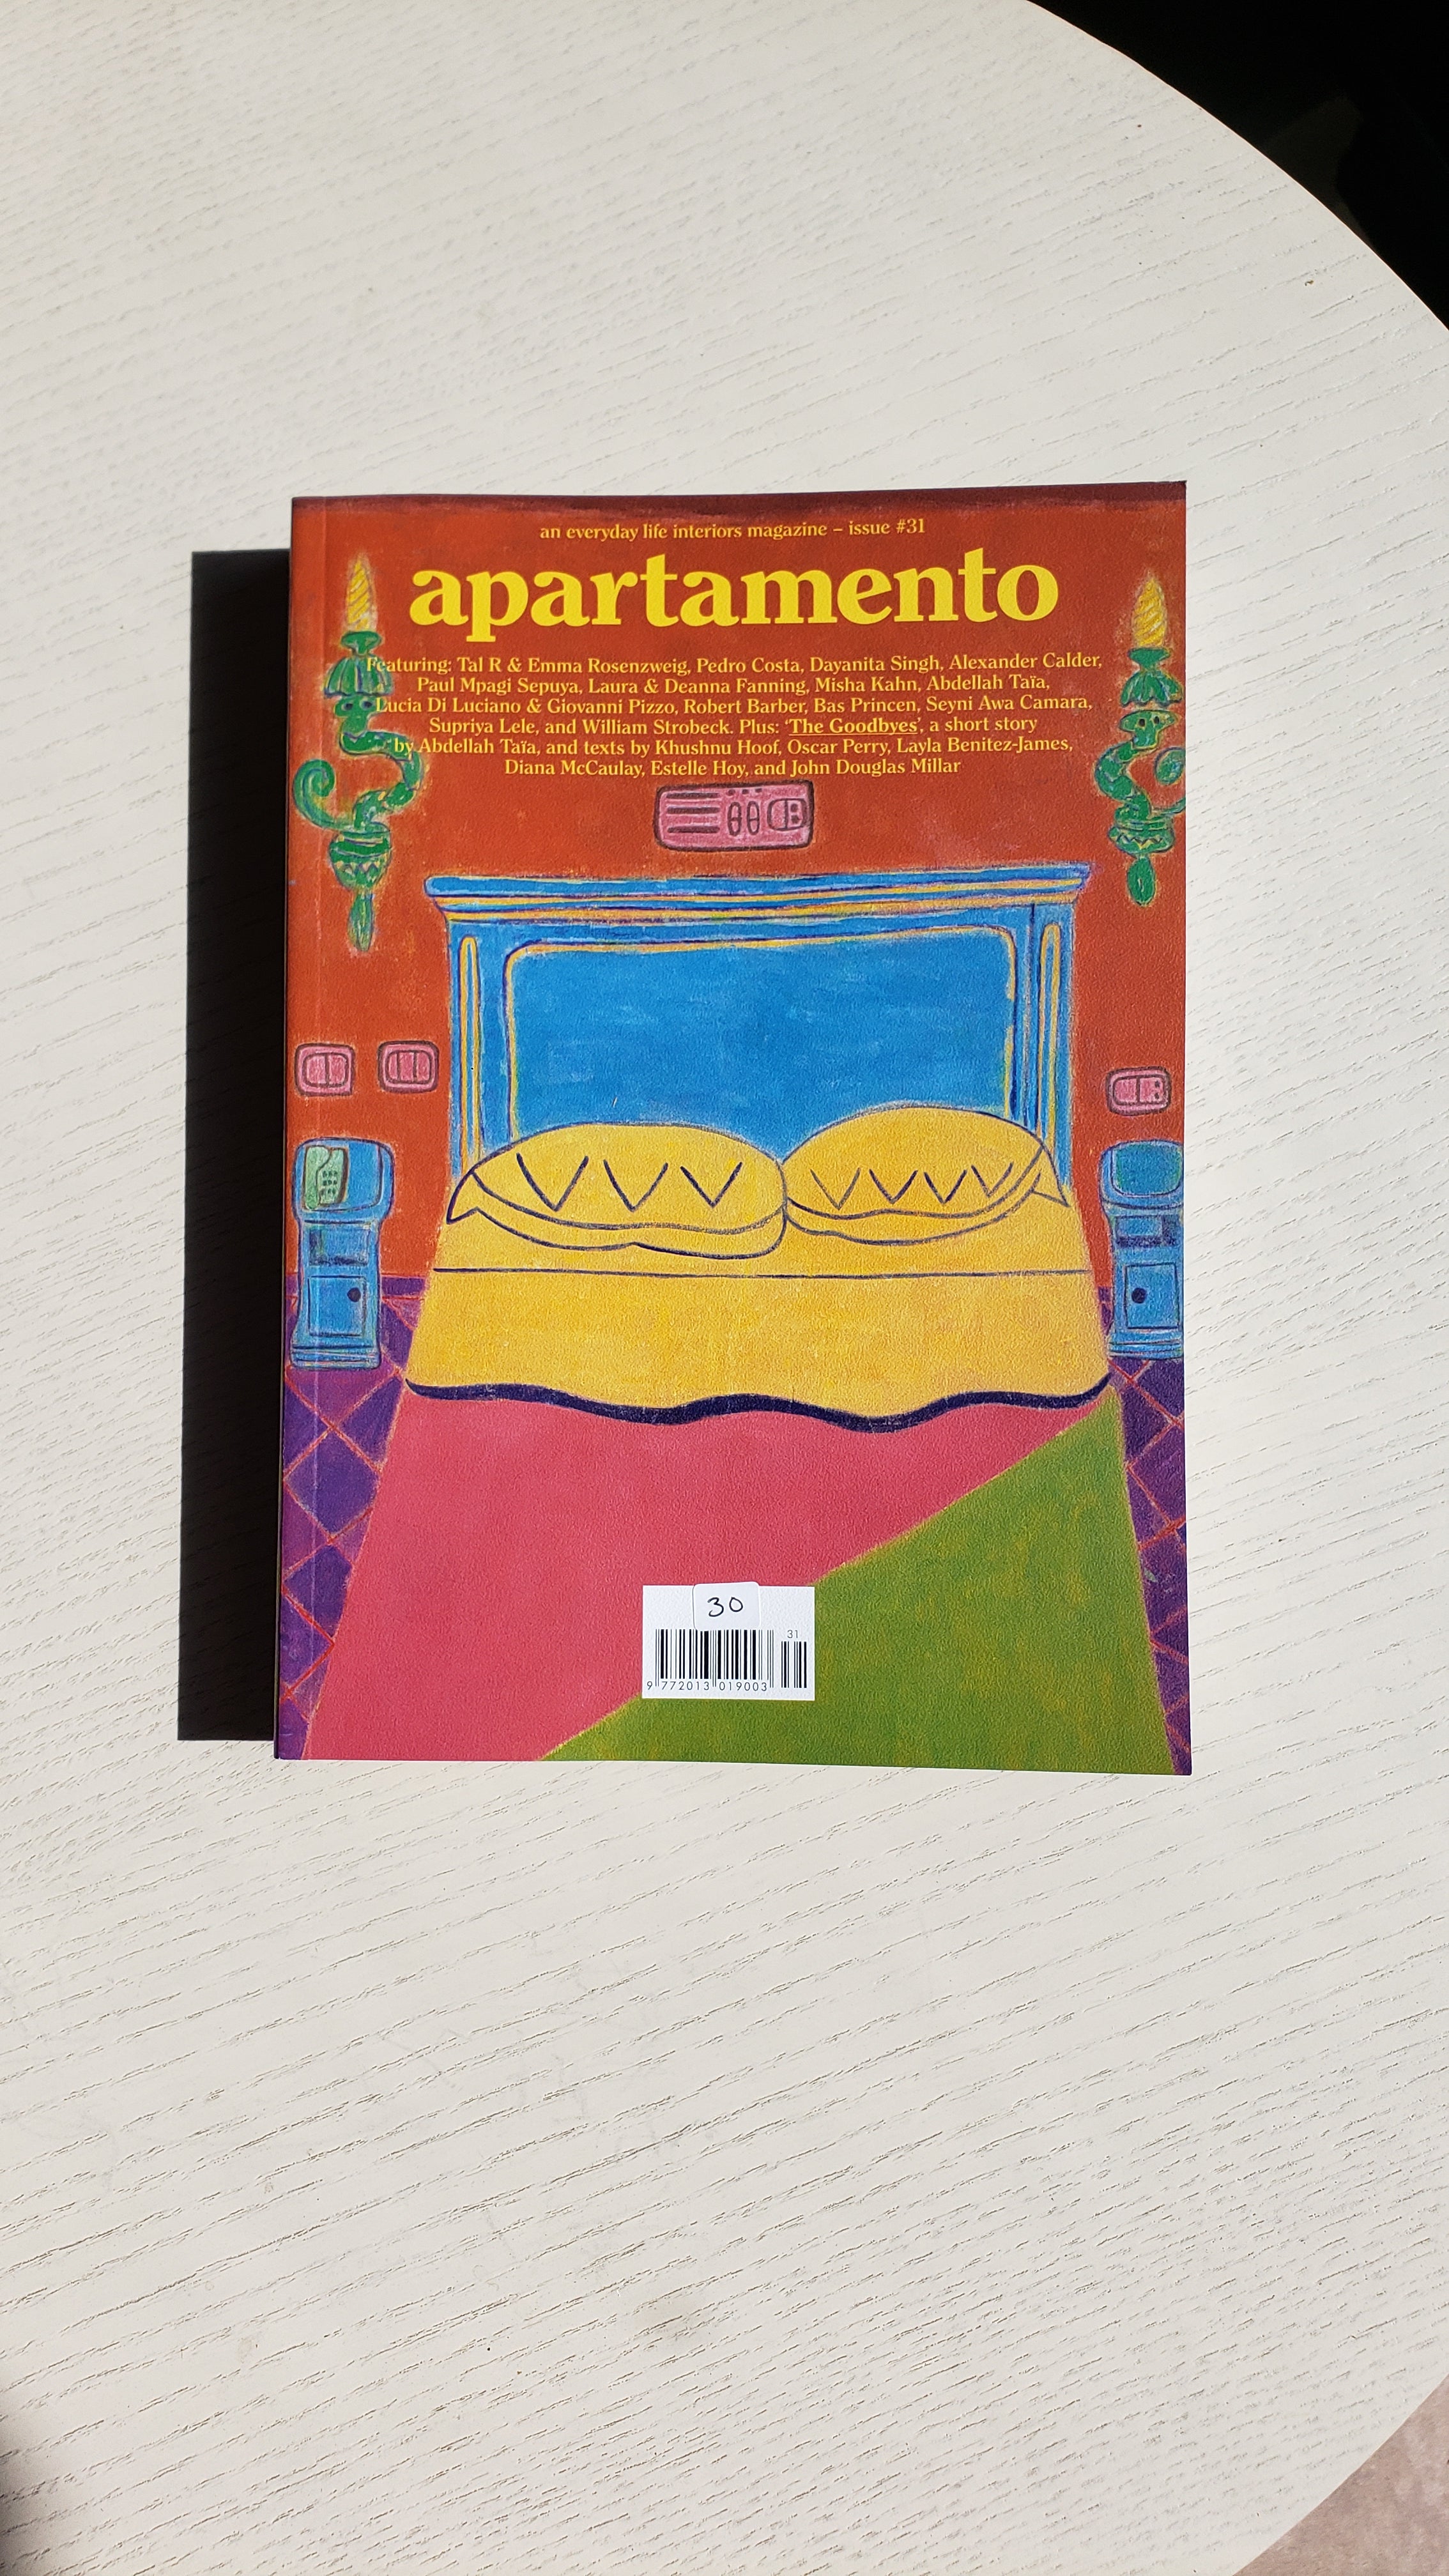 apartamento magazine issue #31 – Shop And Son